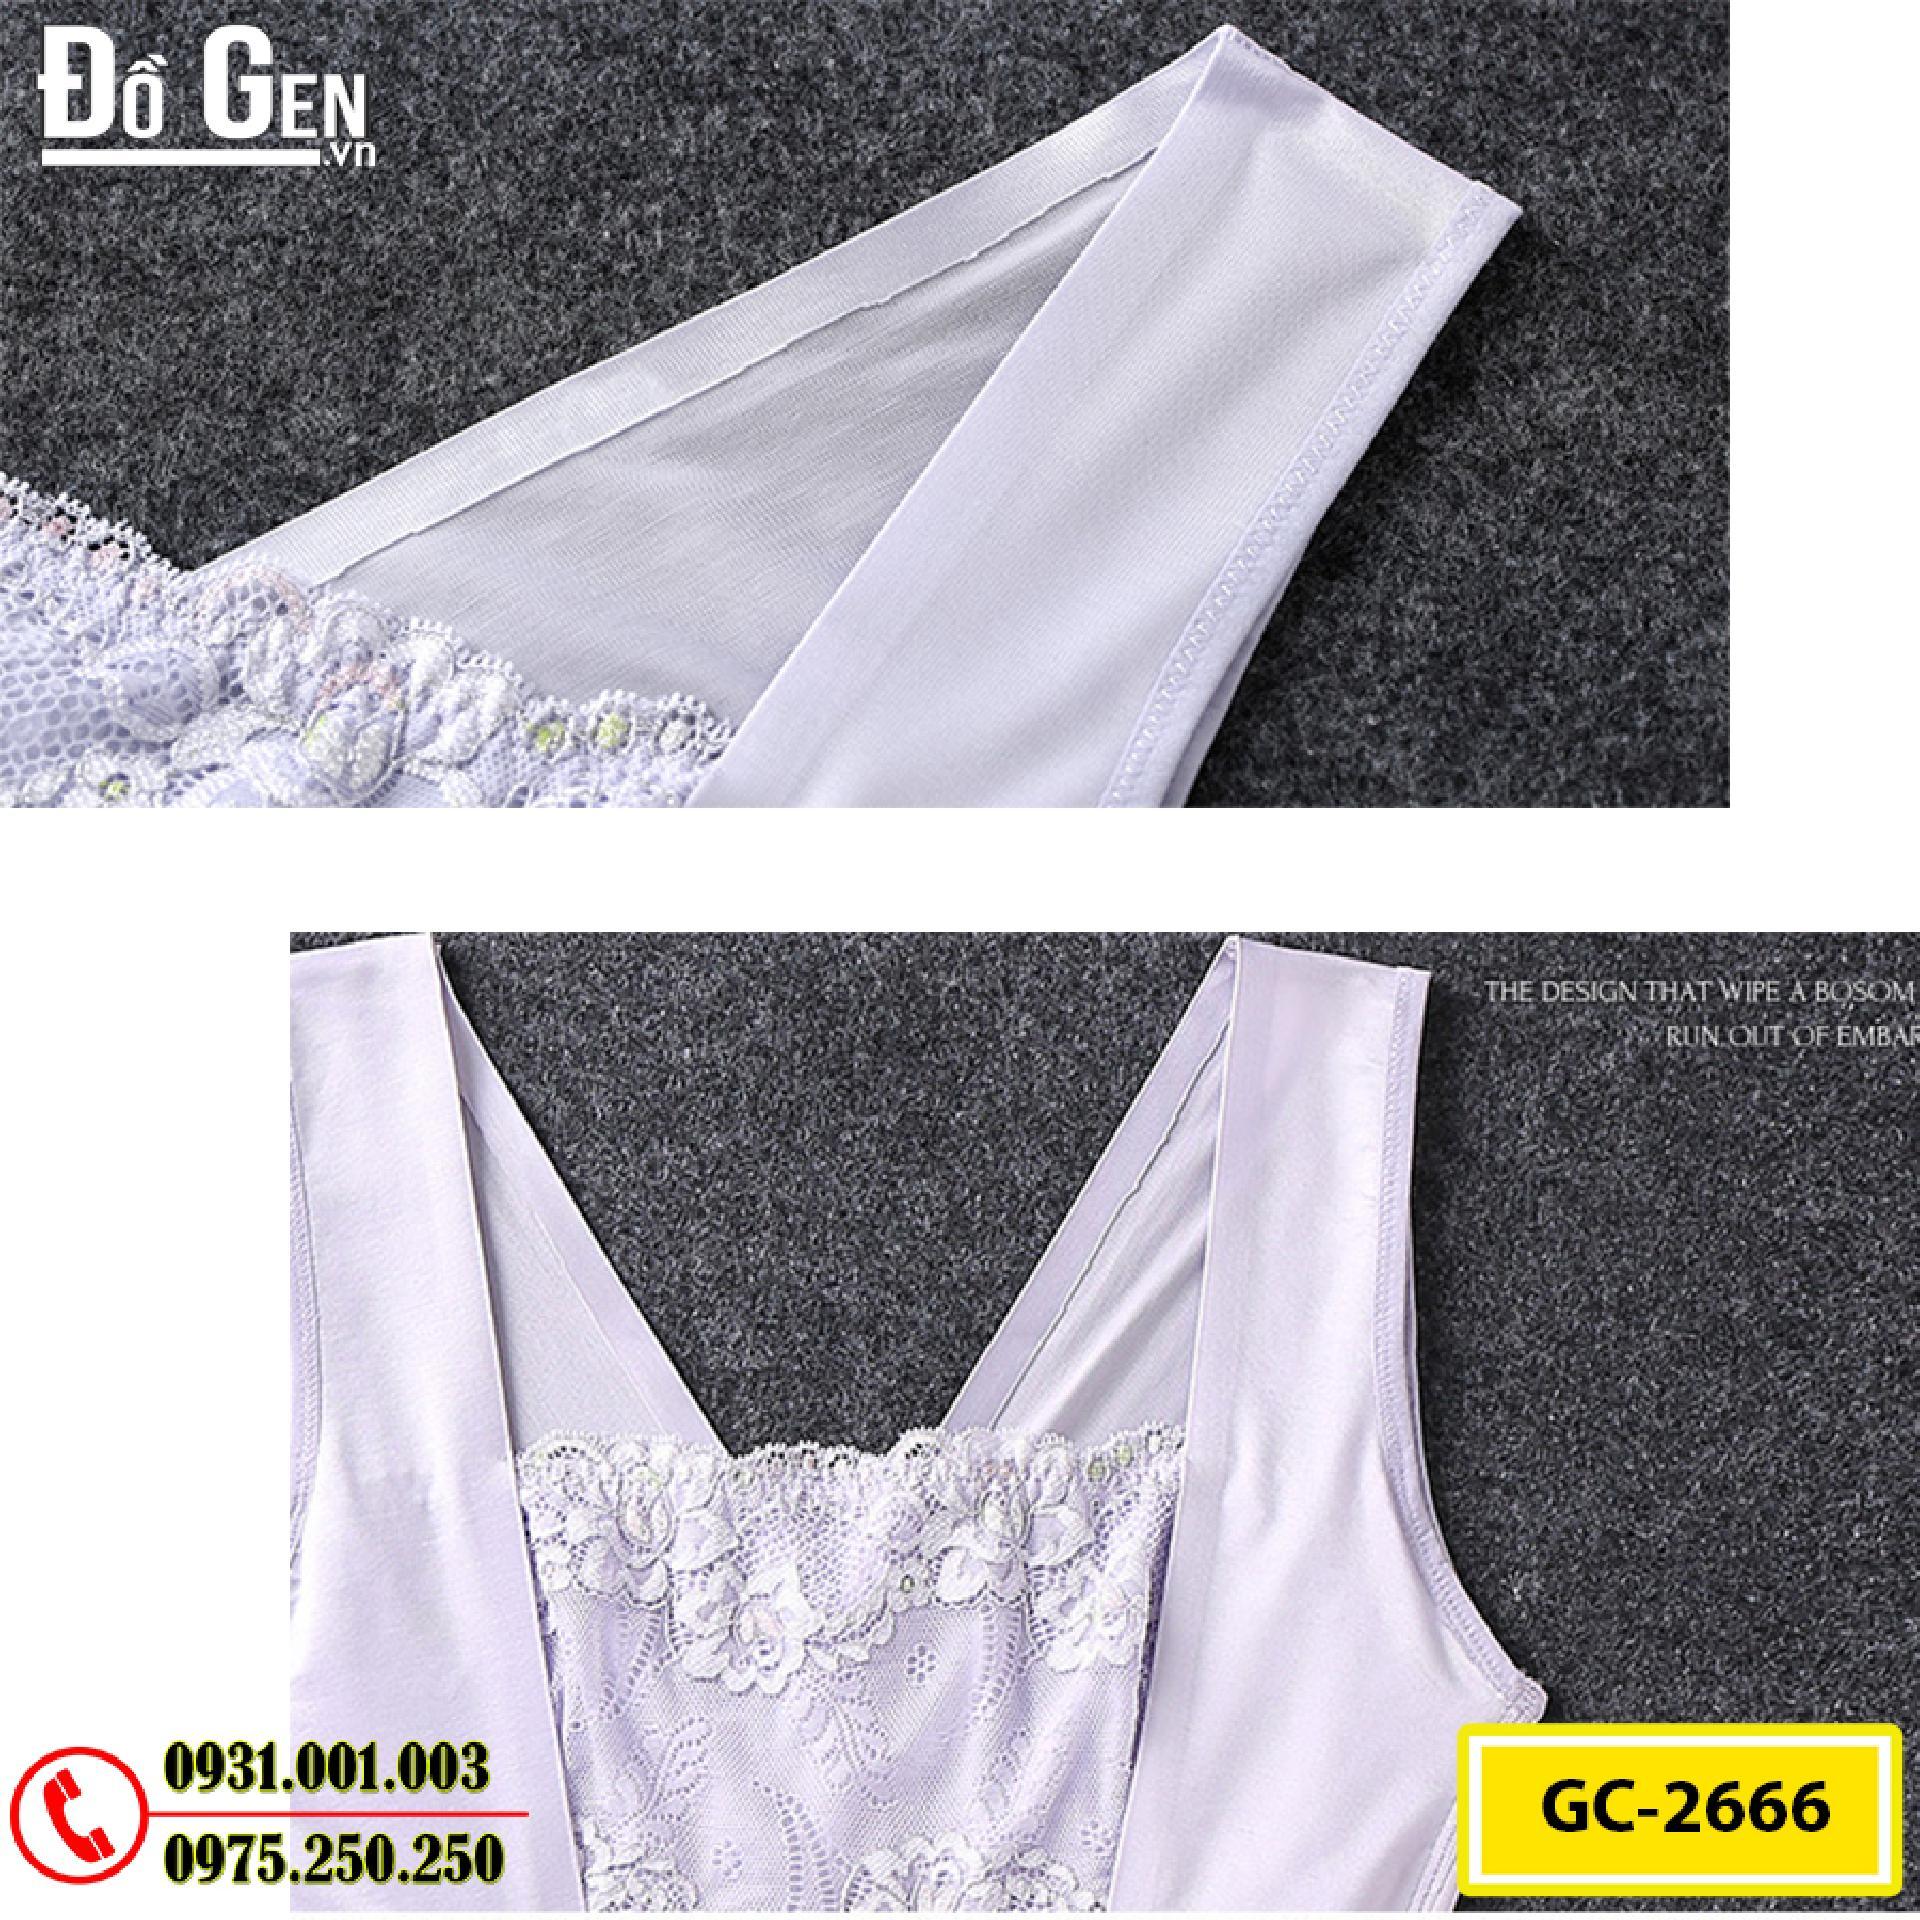 Bộ Đồ Lót Định Hình Bikini Liền Thân Thu Gọn Vòng Eo (Cod: GC-2666)